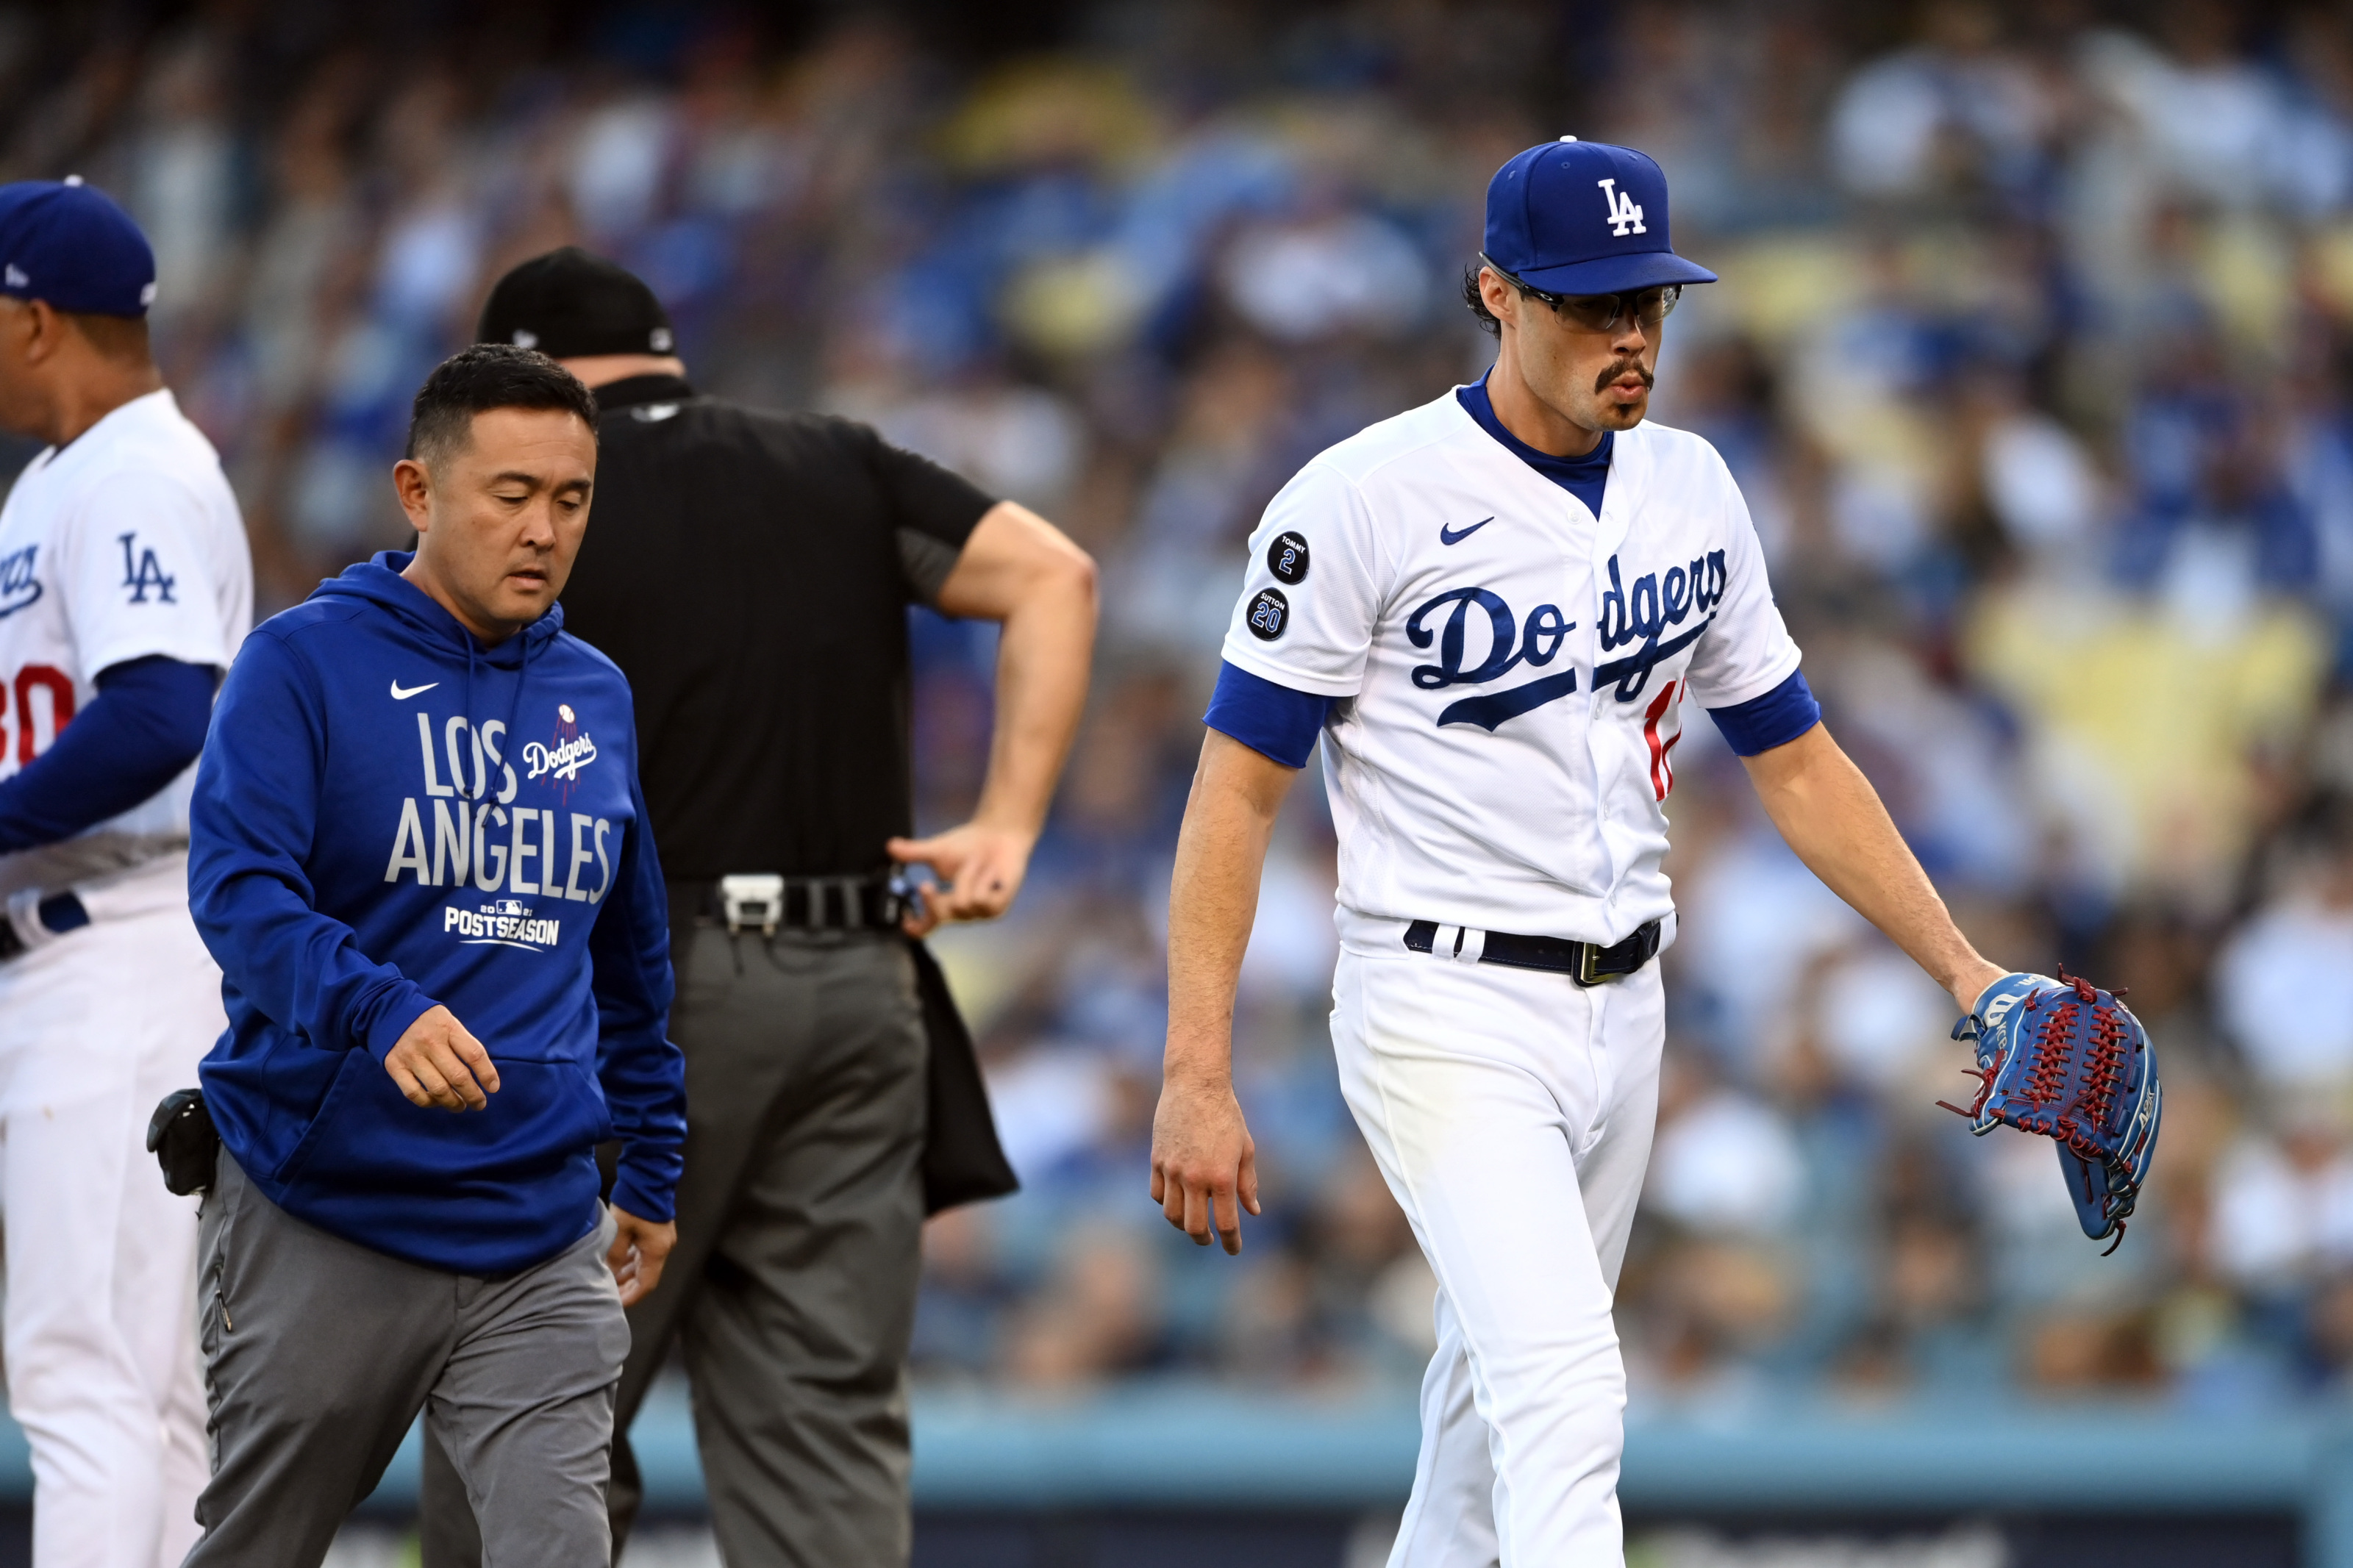 Joe Kelly injury: What happened to Dodgers opener?